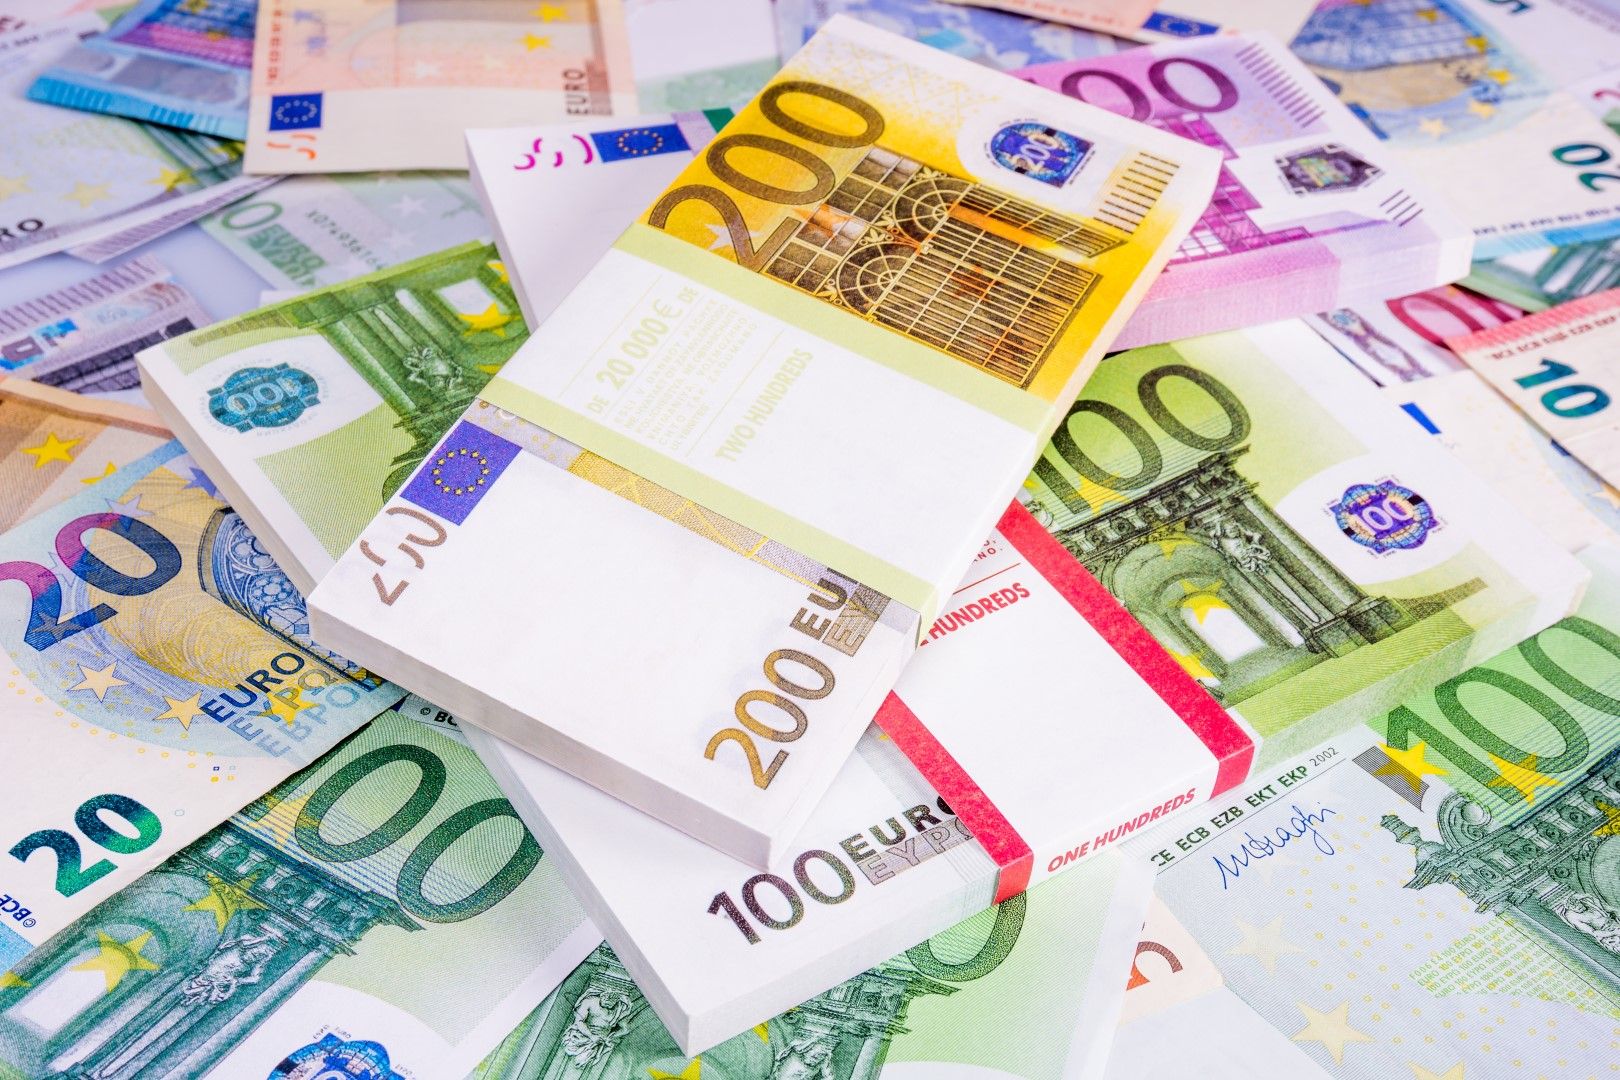 Проучванията показват, че дълговете на някои фирми към държавата в Сърбия достигат до над 1 милион евро